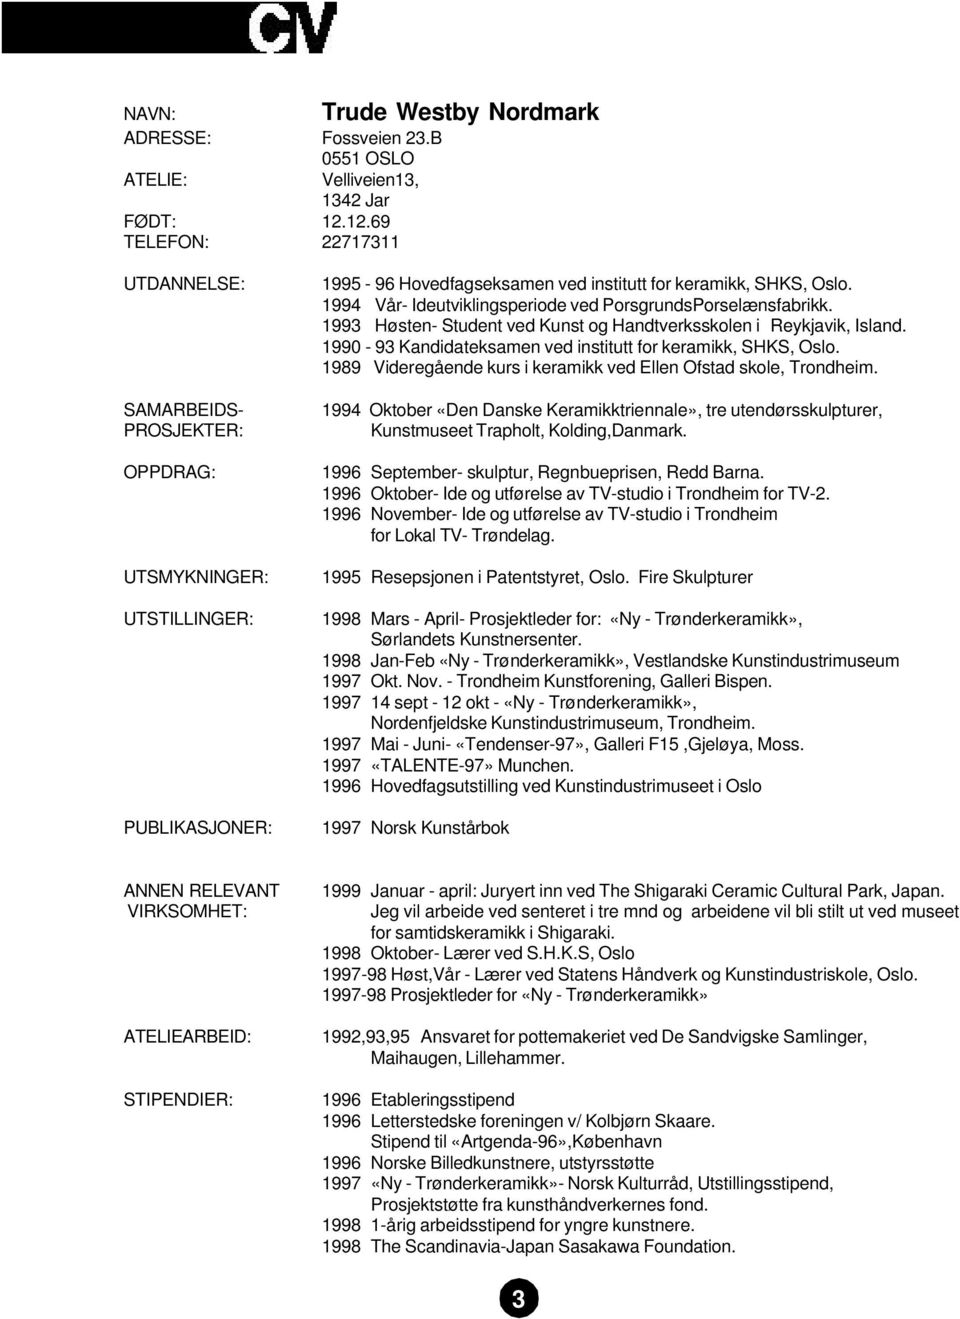 1994 Vår- Ideutviklingsperiode ved PorsgrundsPorselænsfabrikk. 1993 Høsten- Student ved Kunst og Handtverksskolen i Reykjavik, Island. 1990-93 Kandidateksamen ved institutt for keramikk, SHKS, Oslo.